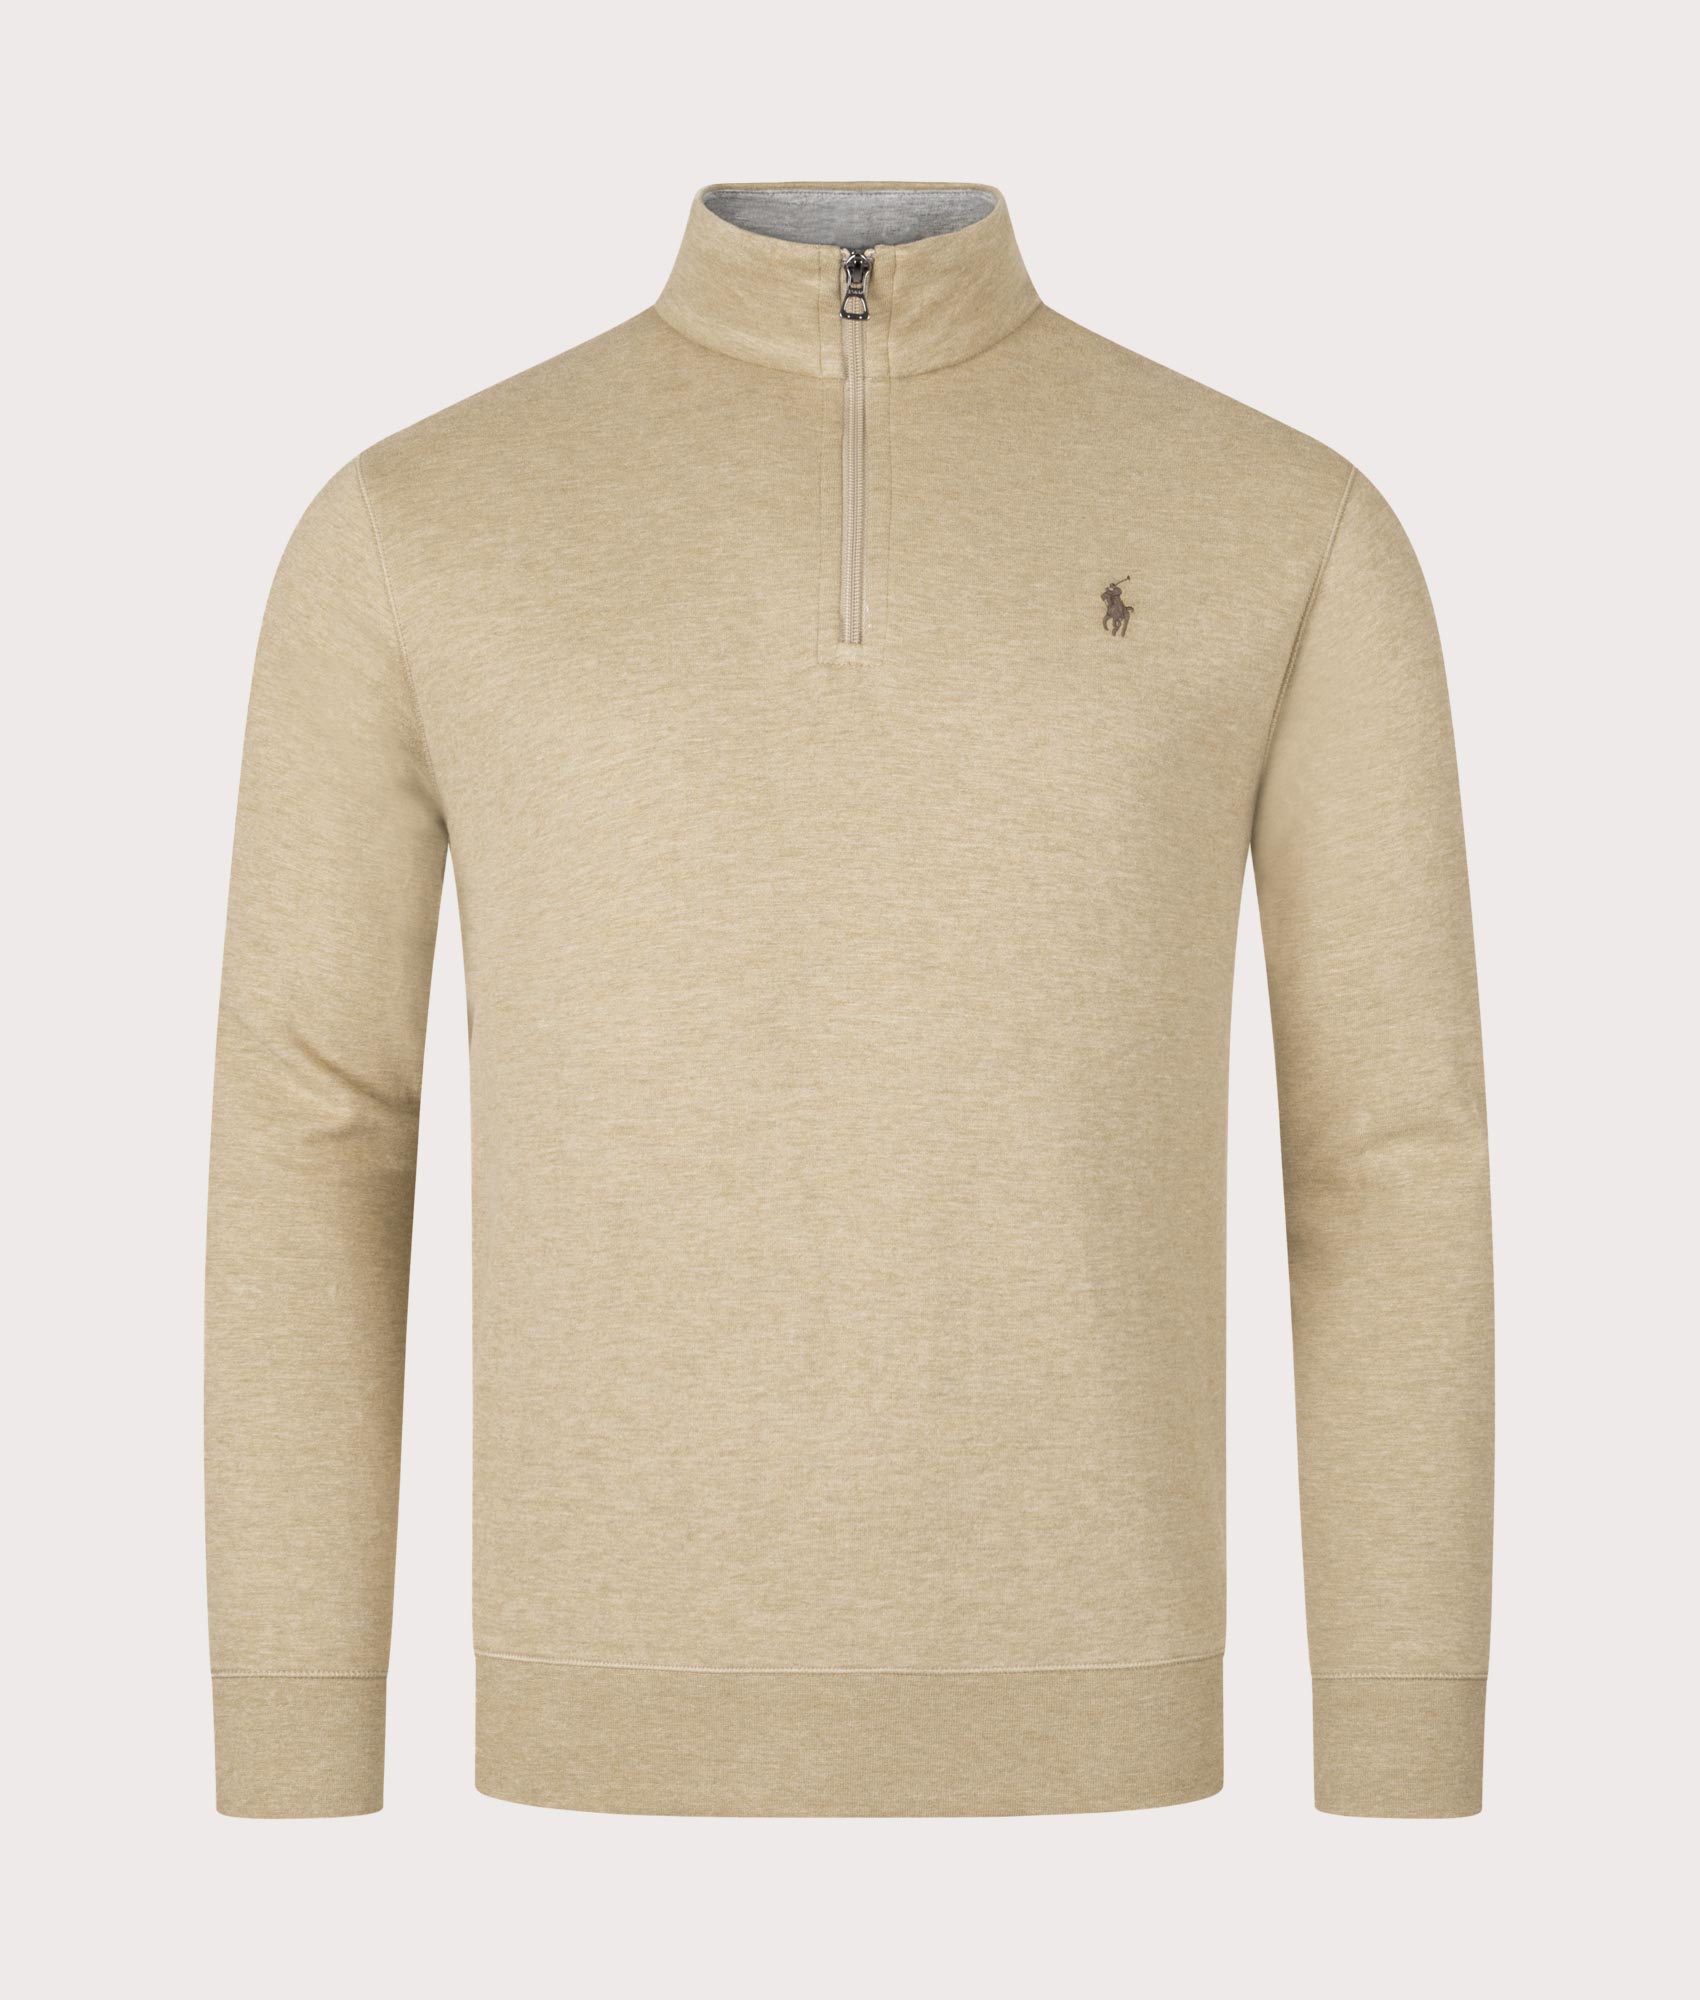 Polo Ralph Lauren Mens Quarter Zip Sweatshirt - Colour: 056 Cafe Tan Heather - Size: XL